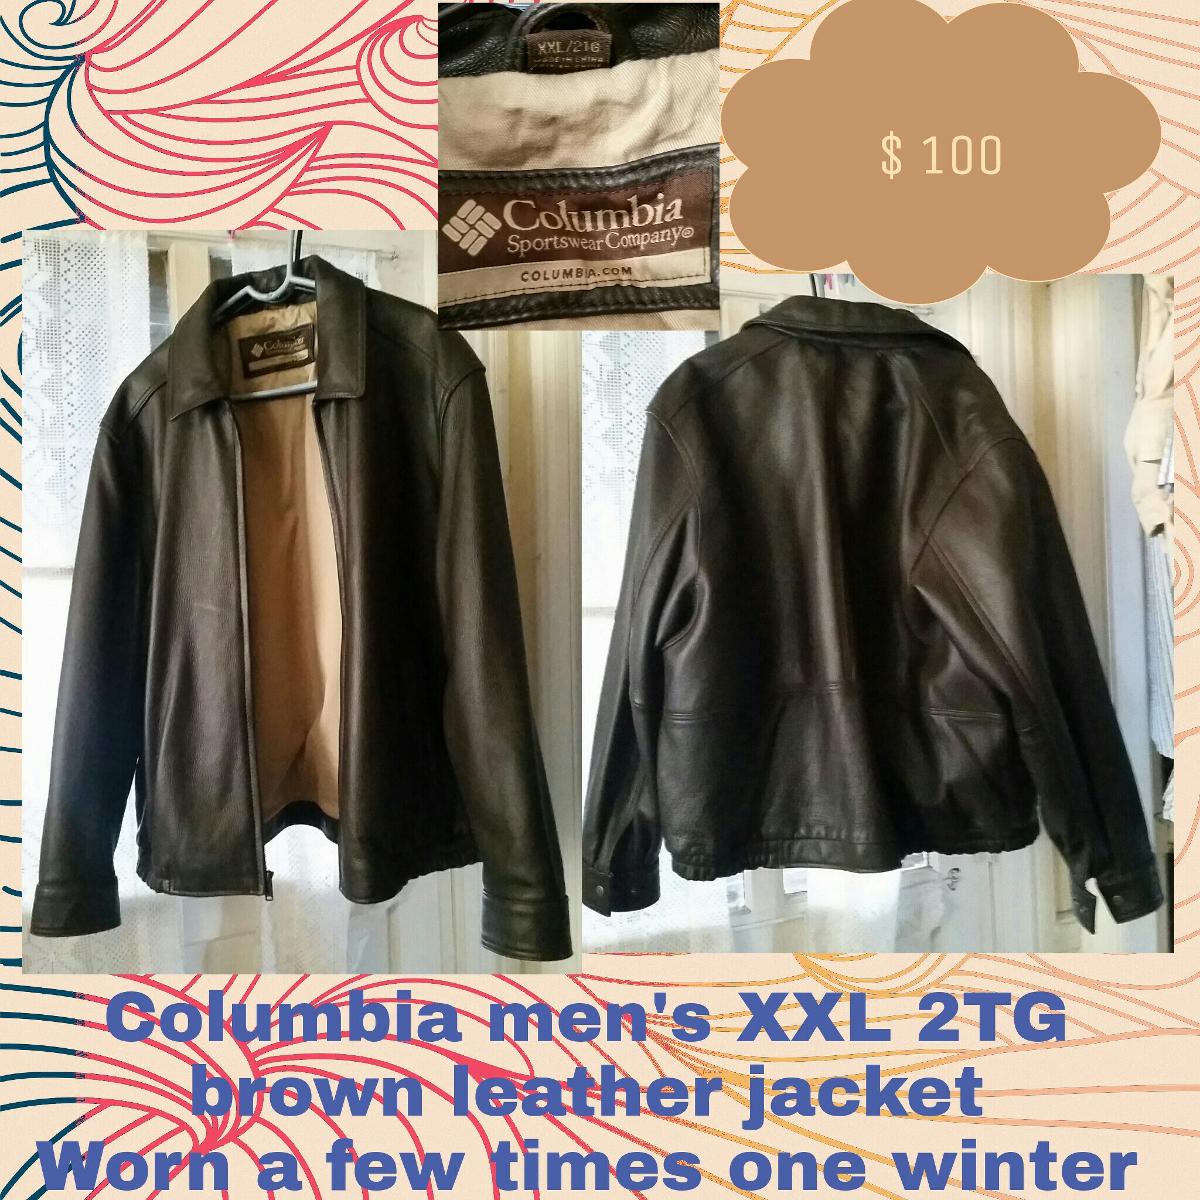 Men’s leather bomber style jacket